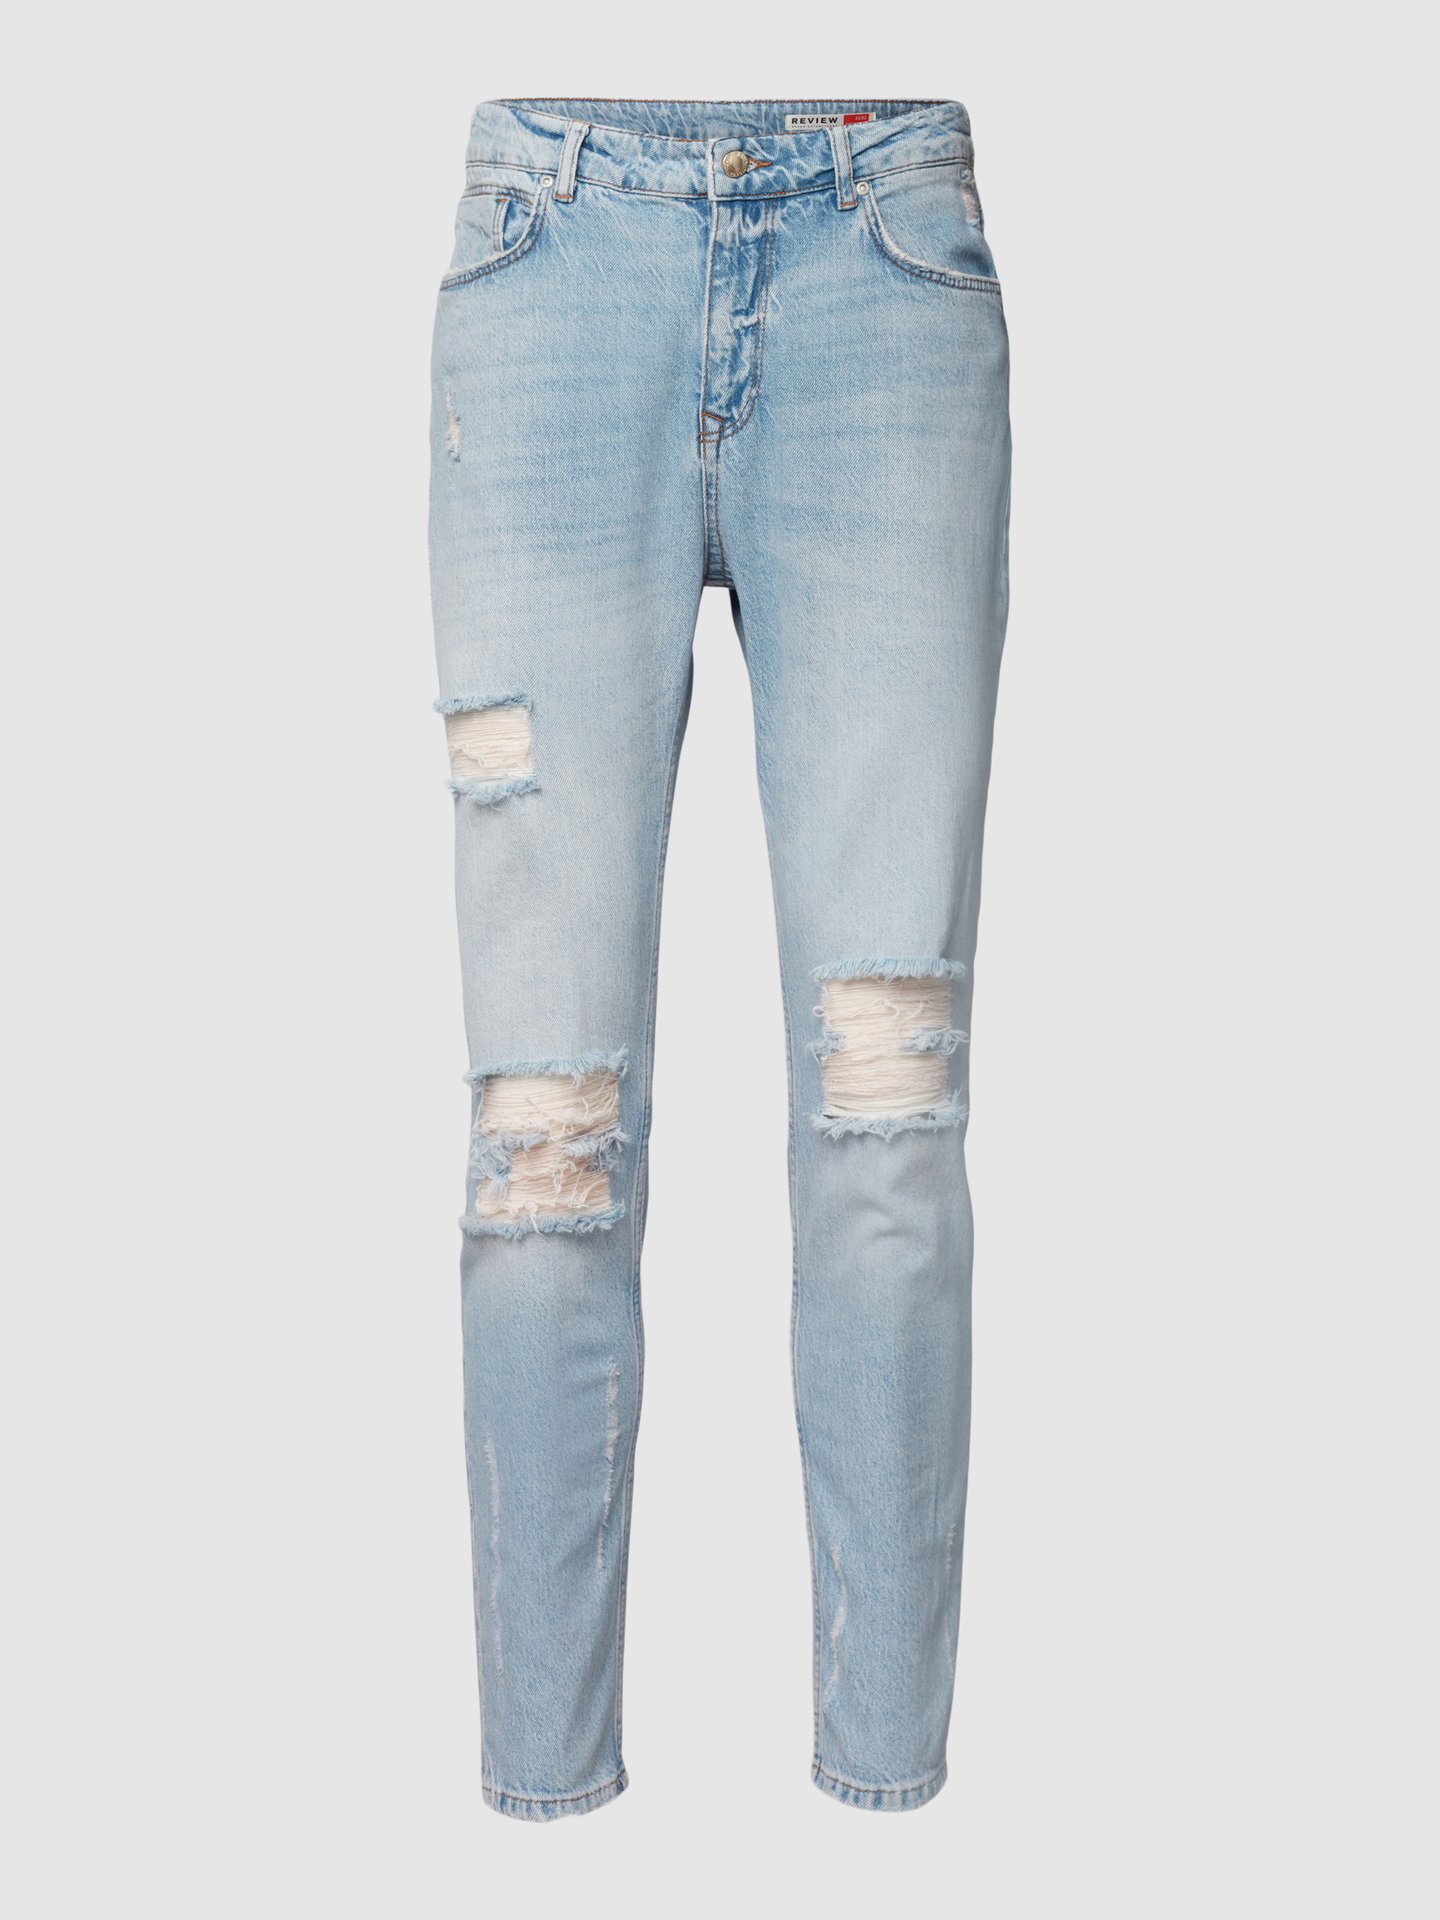 Taiko buik Cornwall Verdienen REVIEW Jeans in destroyed-look in lichtblauw online kopen | P&C